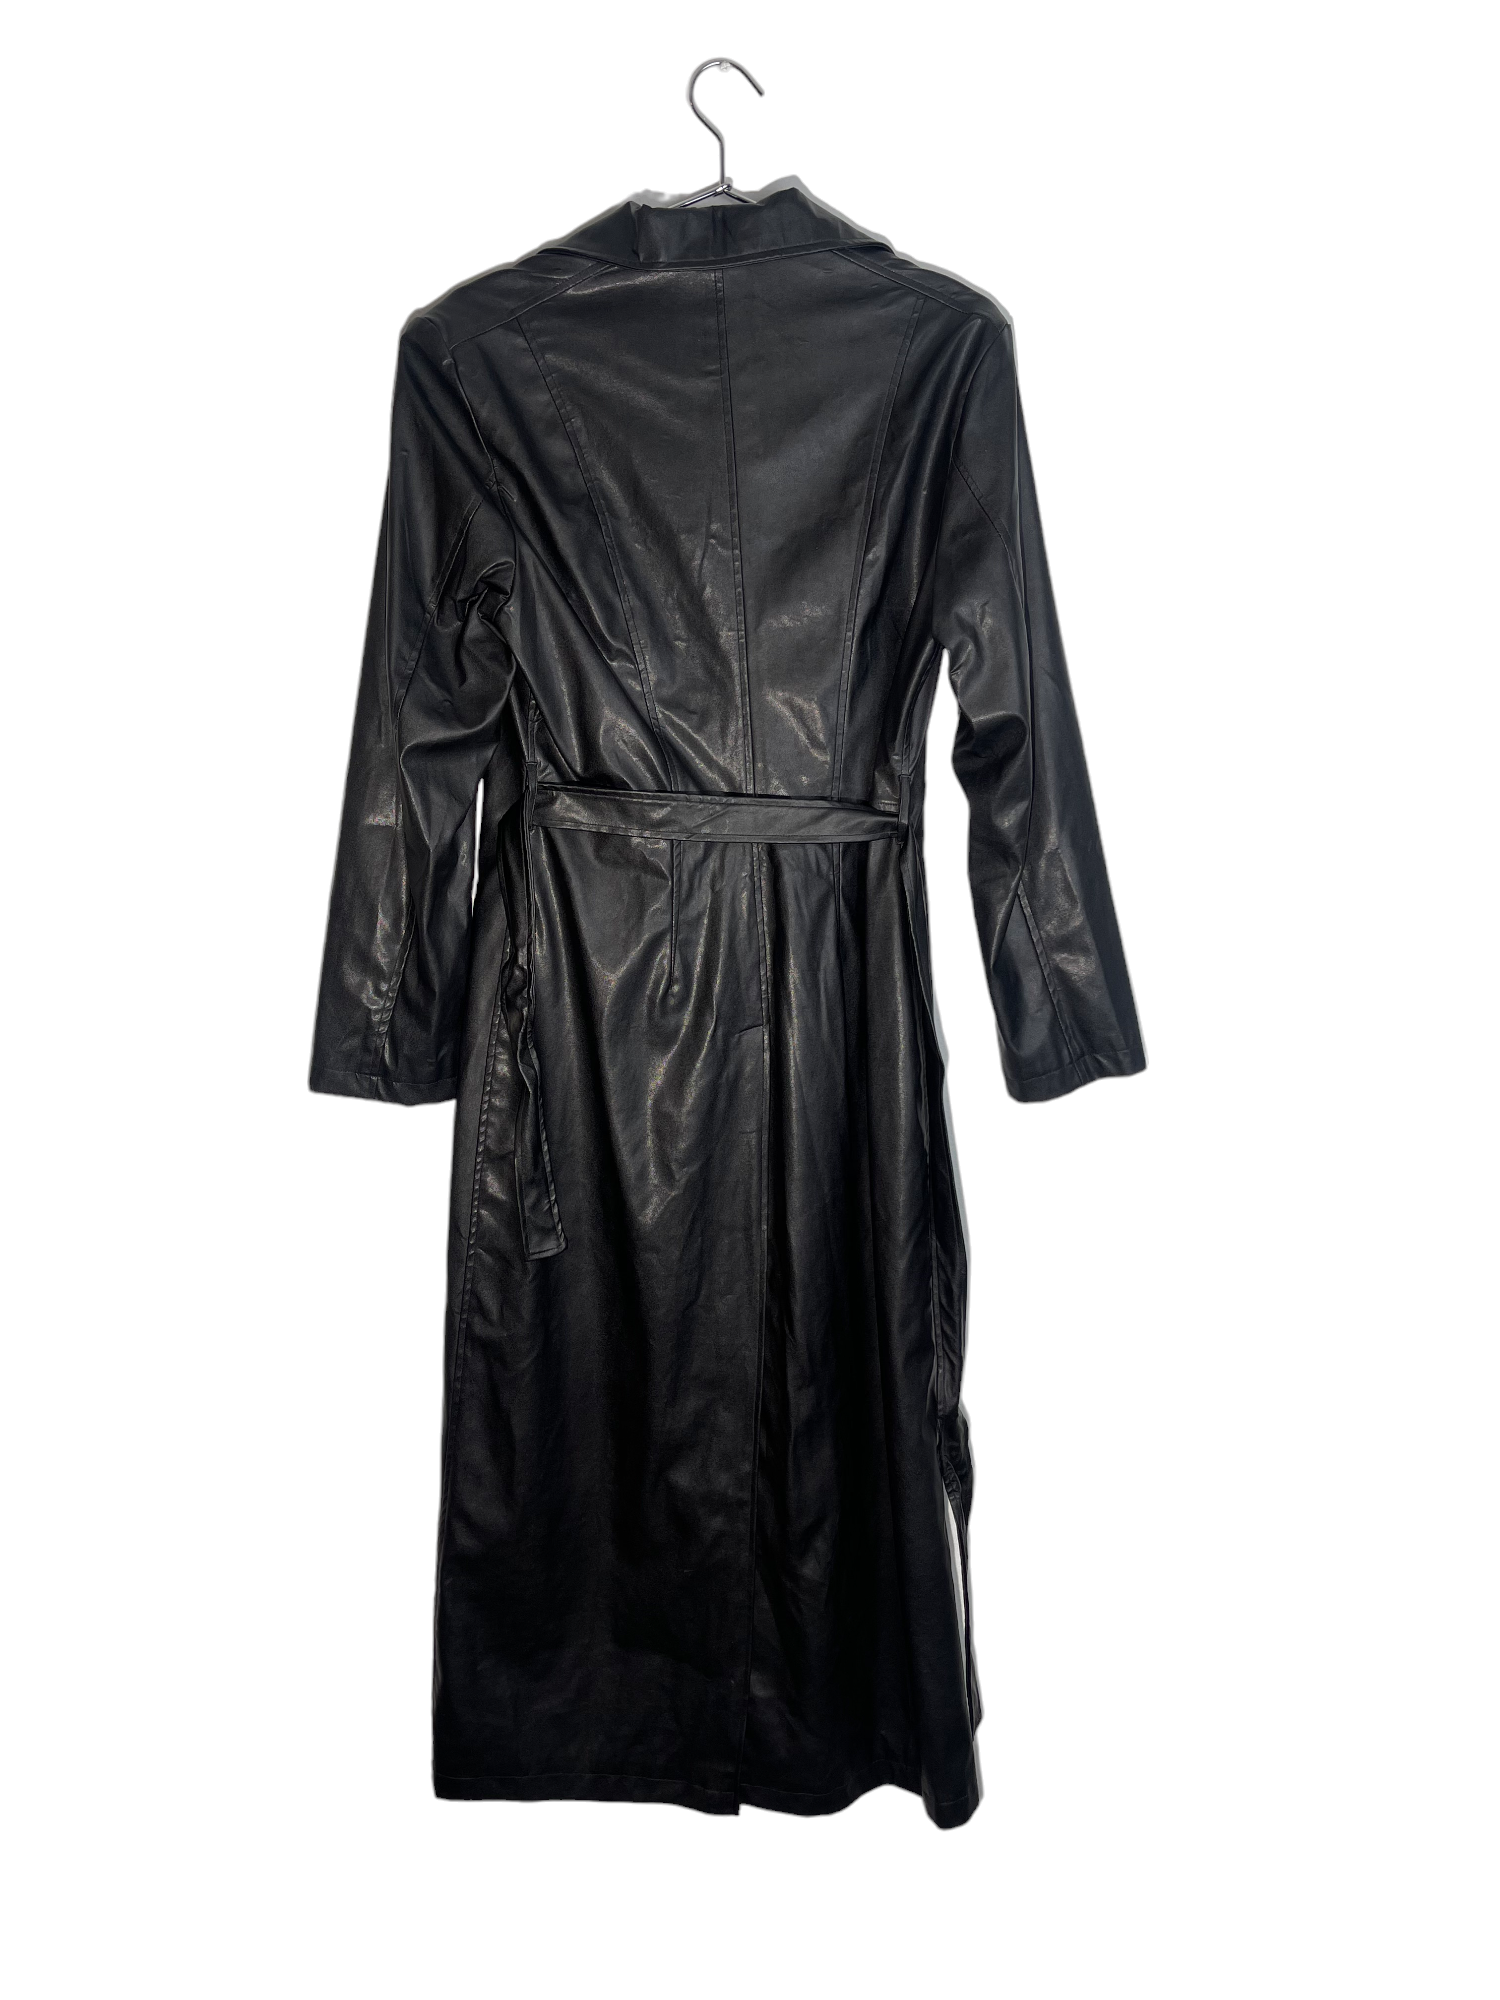 Ozone Black Leather Coat